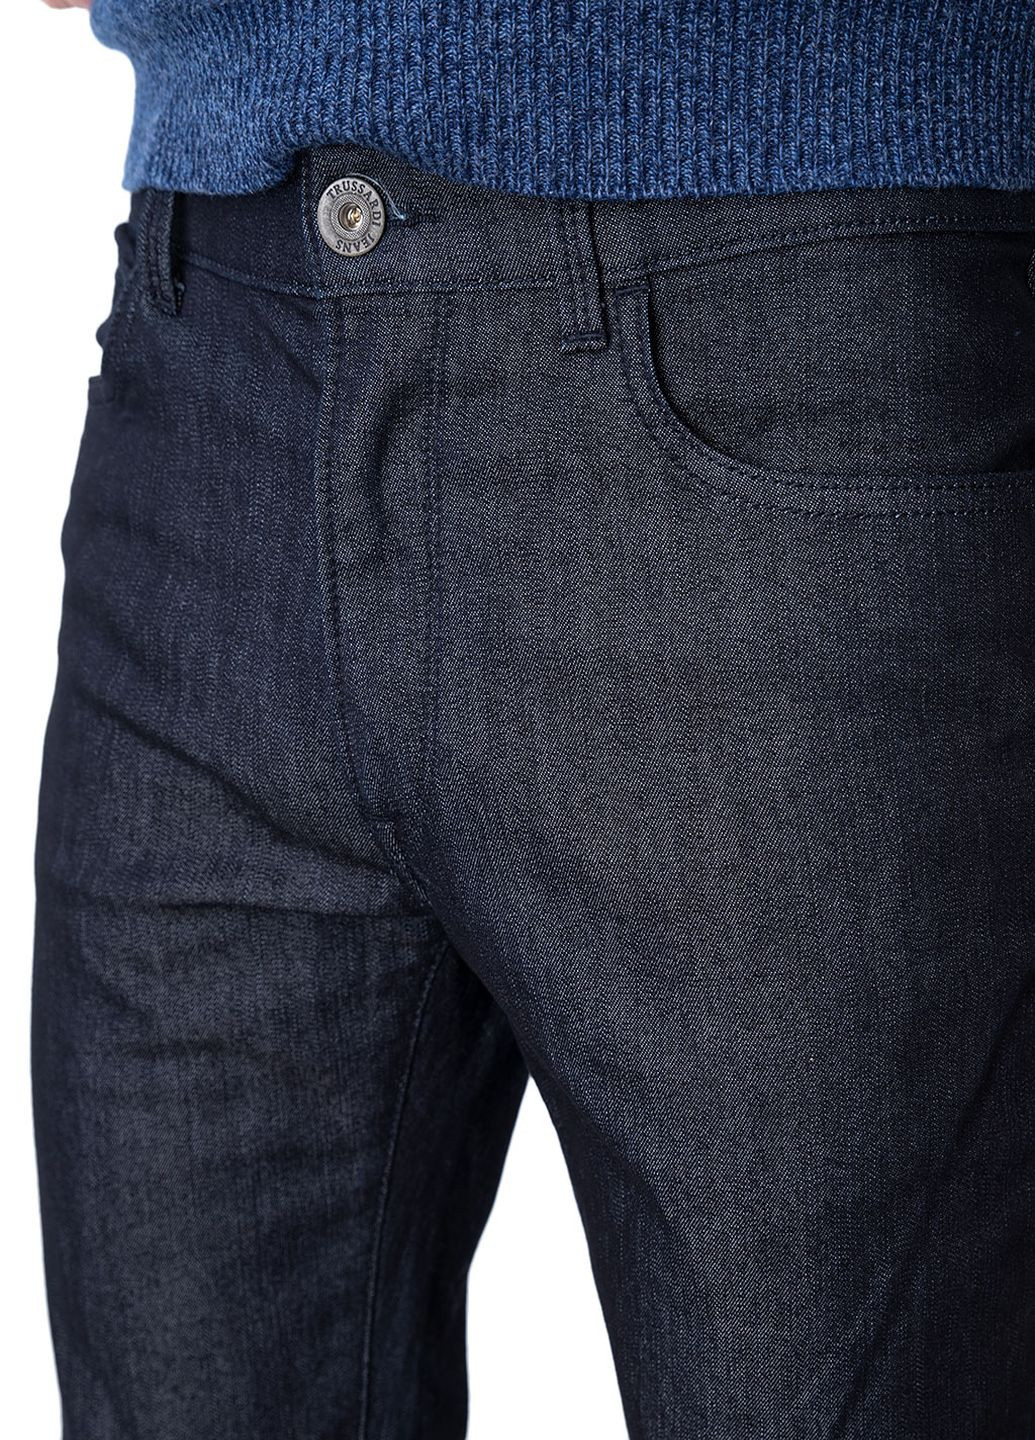 Серые зимние джинсы Trussardi Jeans